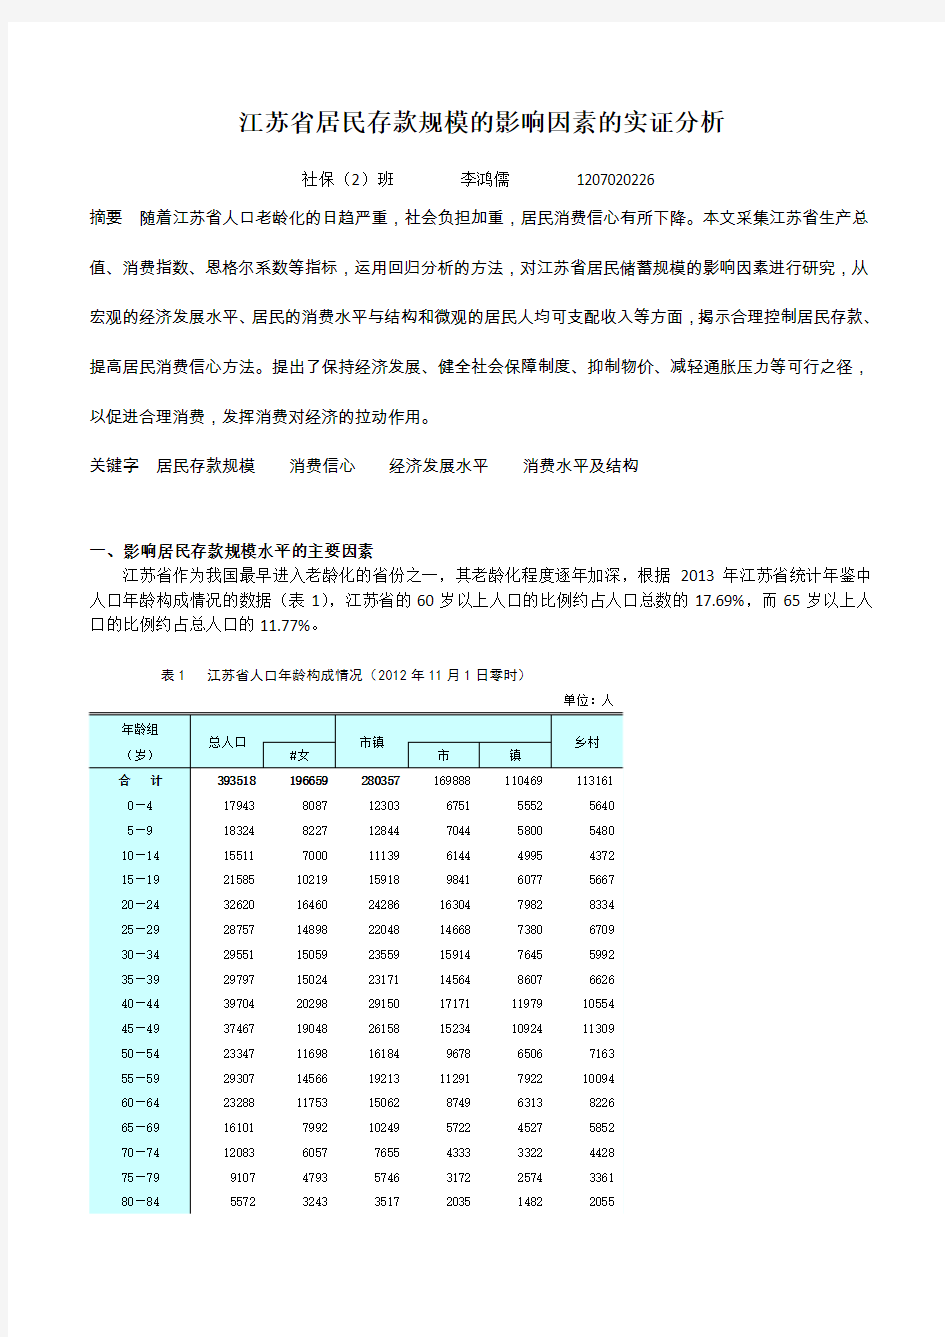 江苏省居民存款规模的影响因素的实证分析